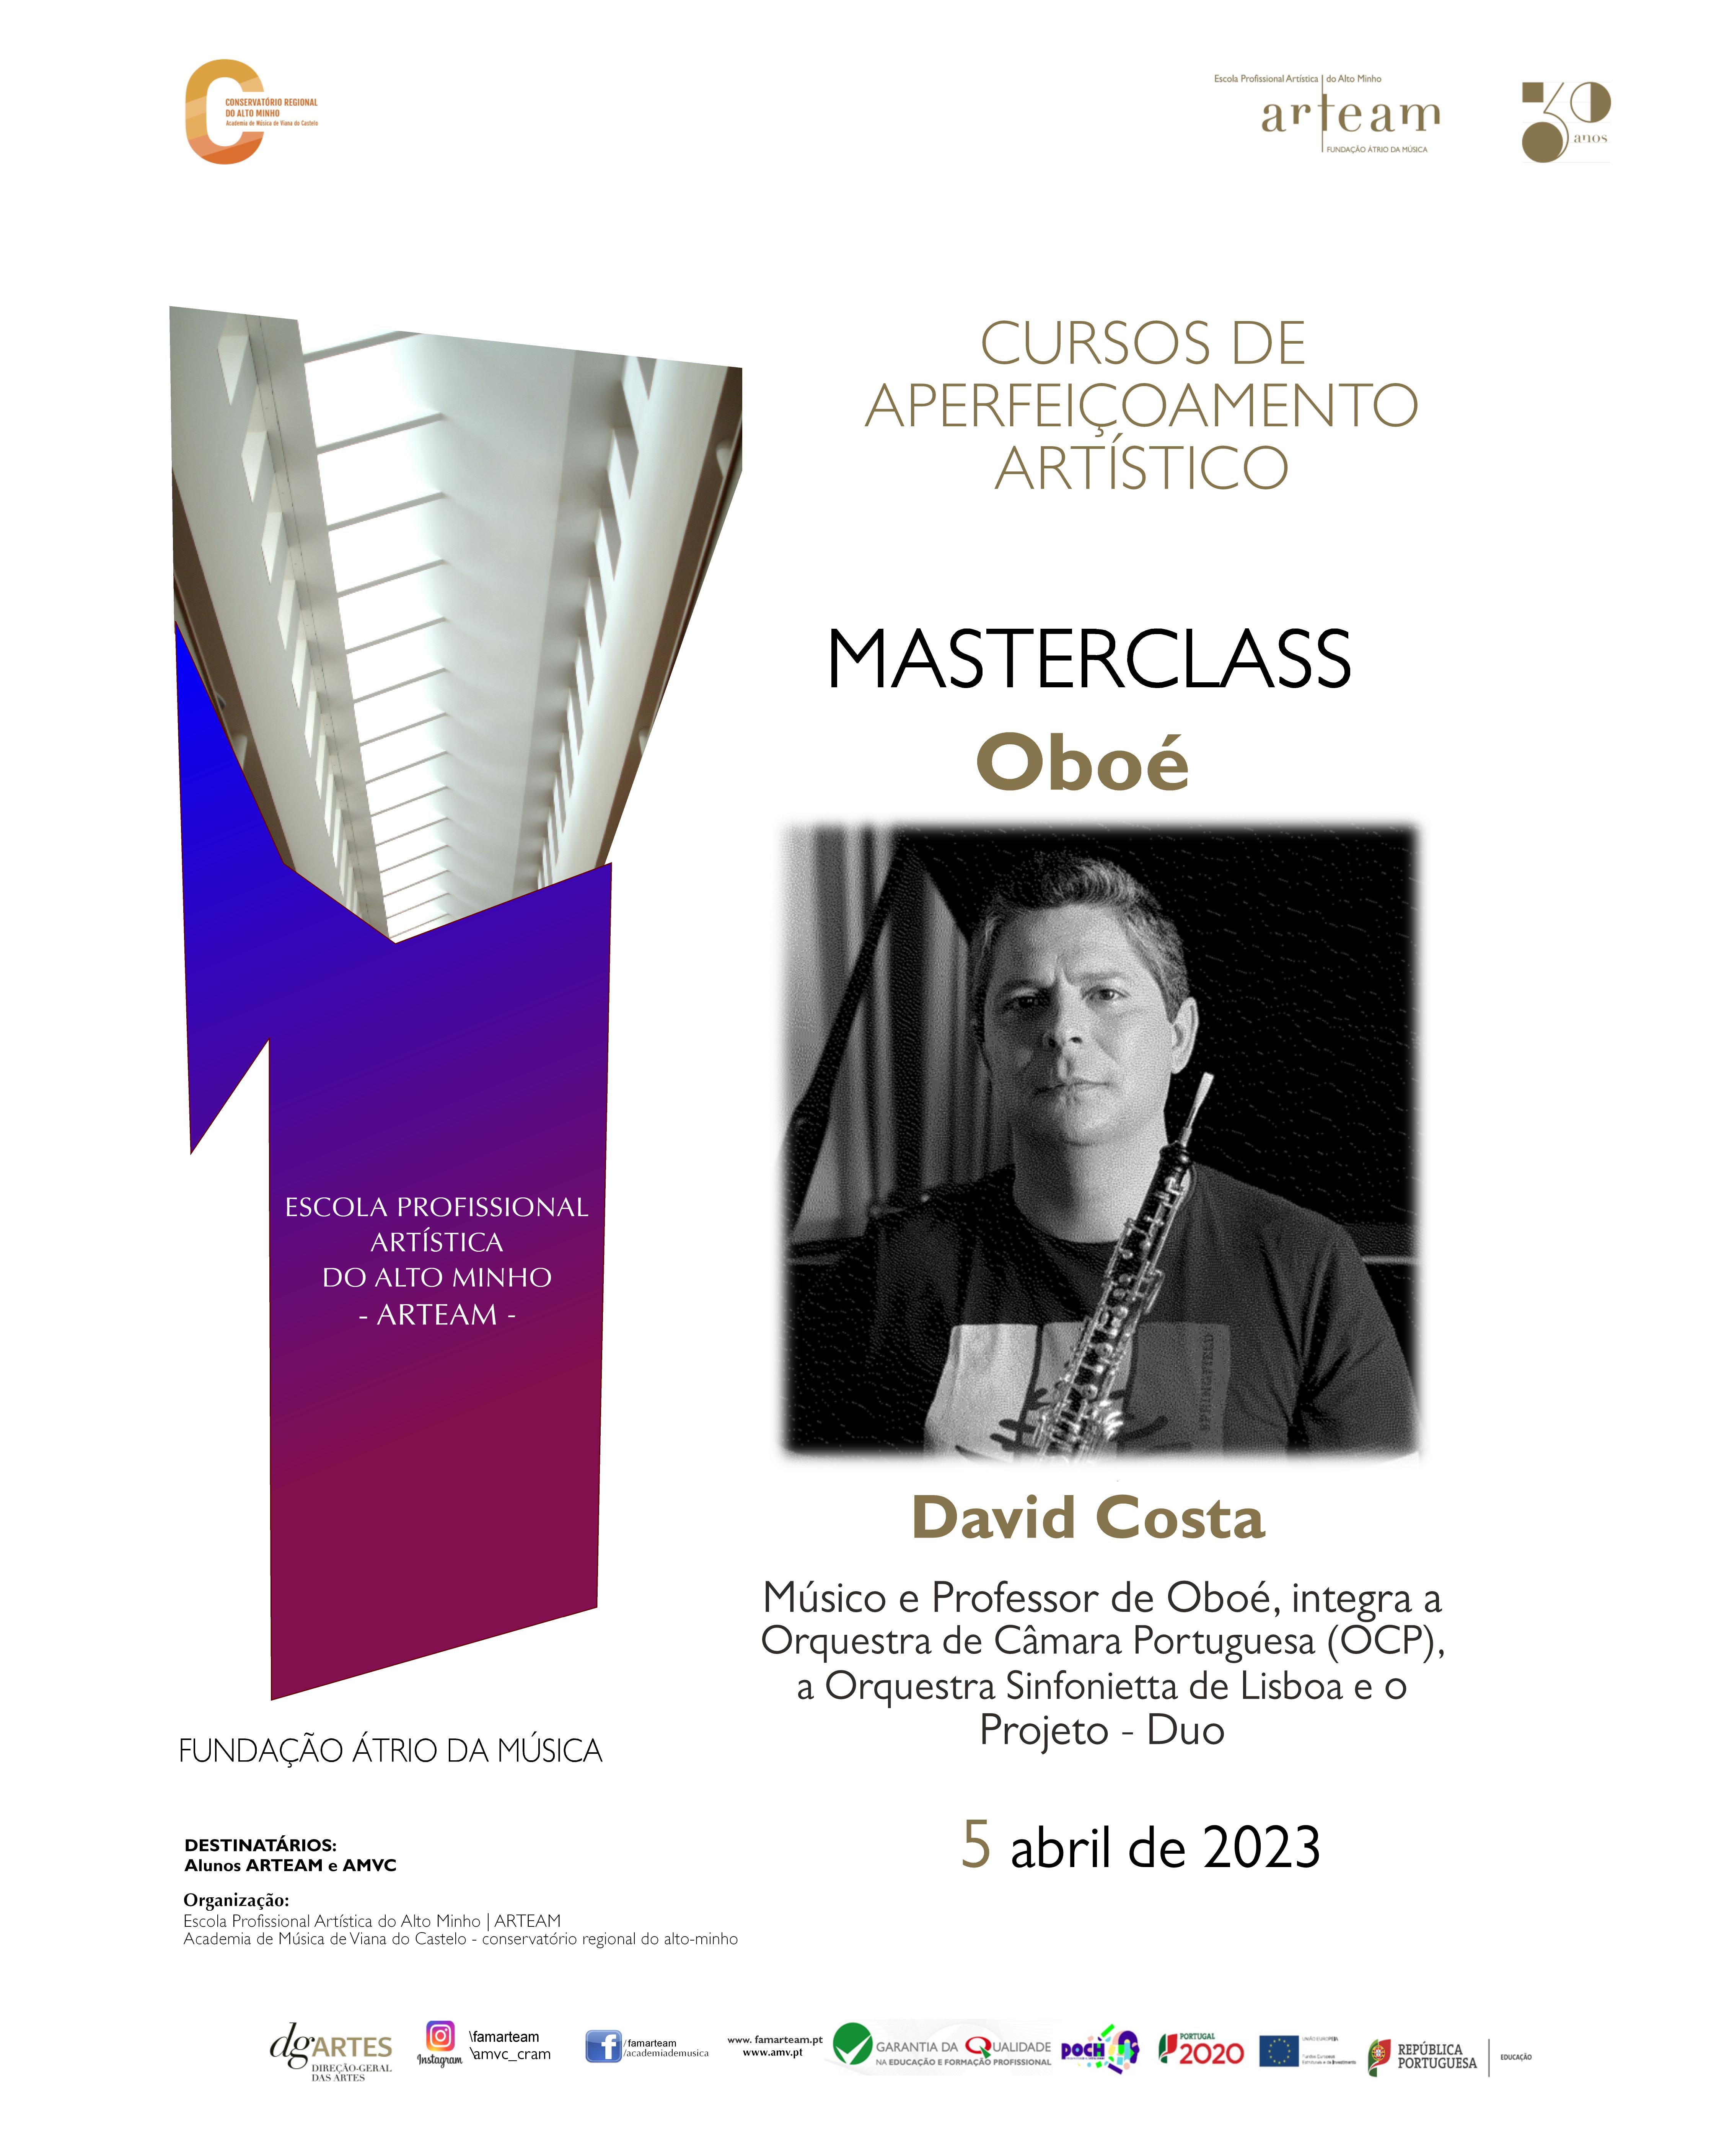 Masterclass de Oboé por David Costa